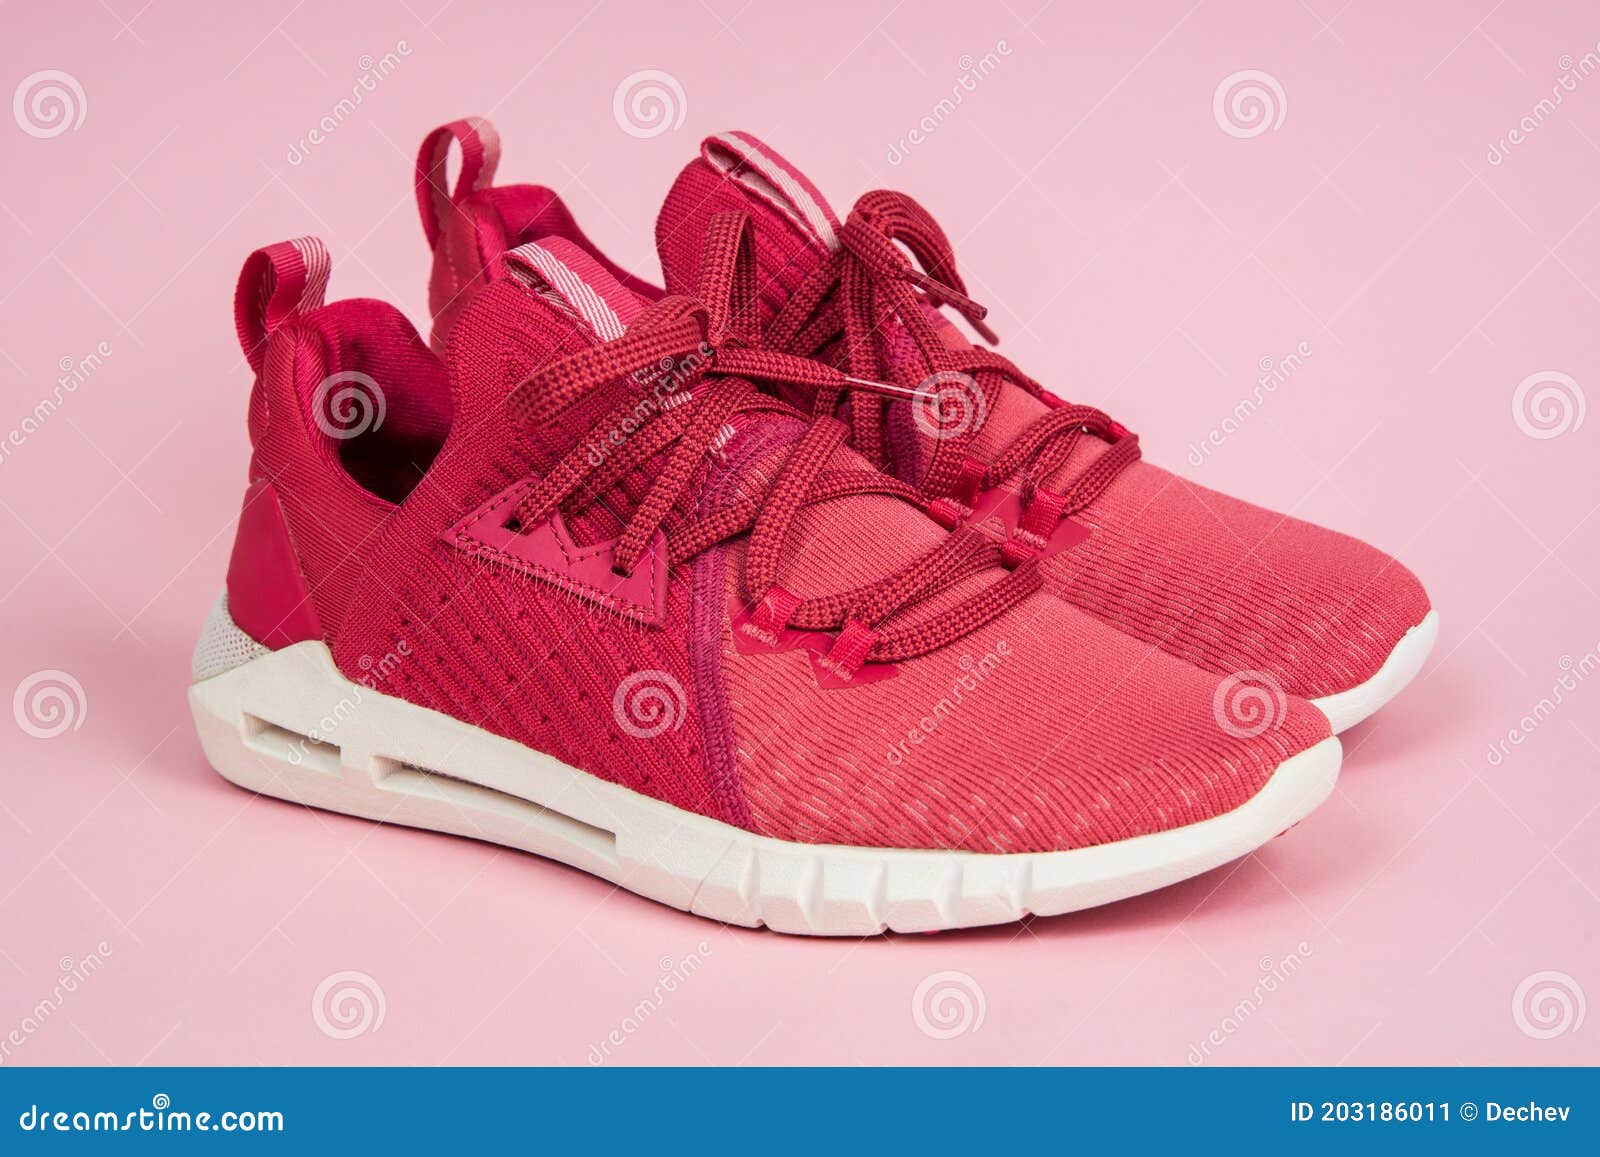 Par De Zapatillas Deportivas Rosadas Nuevas En Fondo Rosa. Mujeres Rosas Con Zapatos De Correr de archivo Imagen de modelo, 203186011